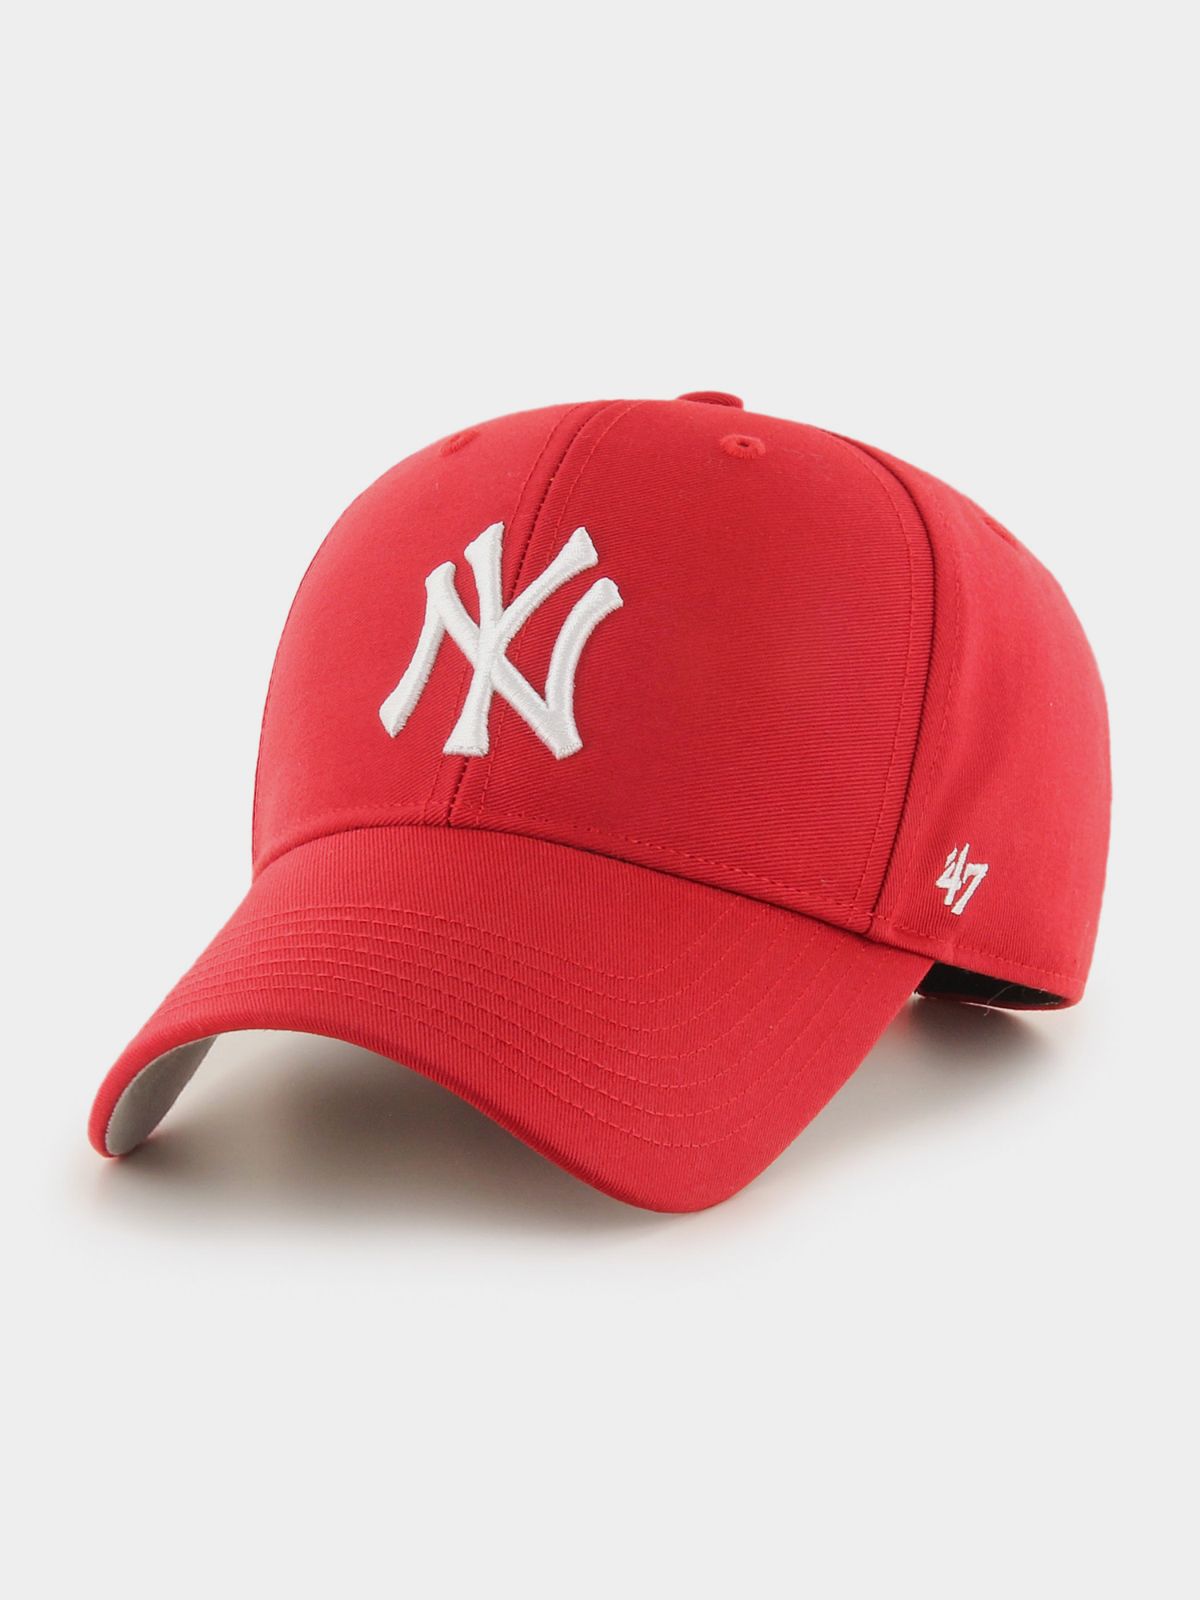  כובע מצחייה עם רקמת לוגו / נשים של BRAND 47